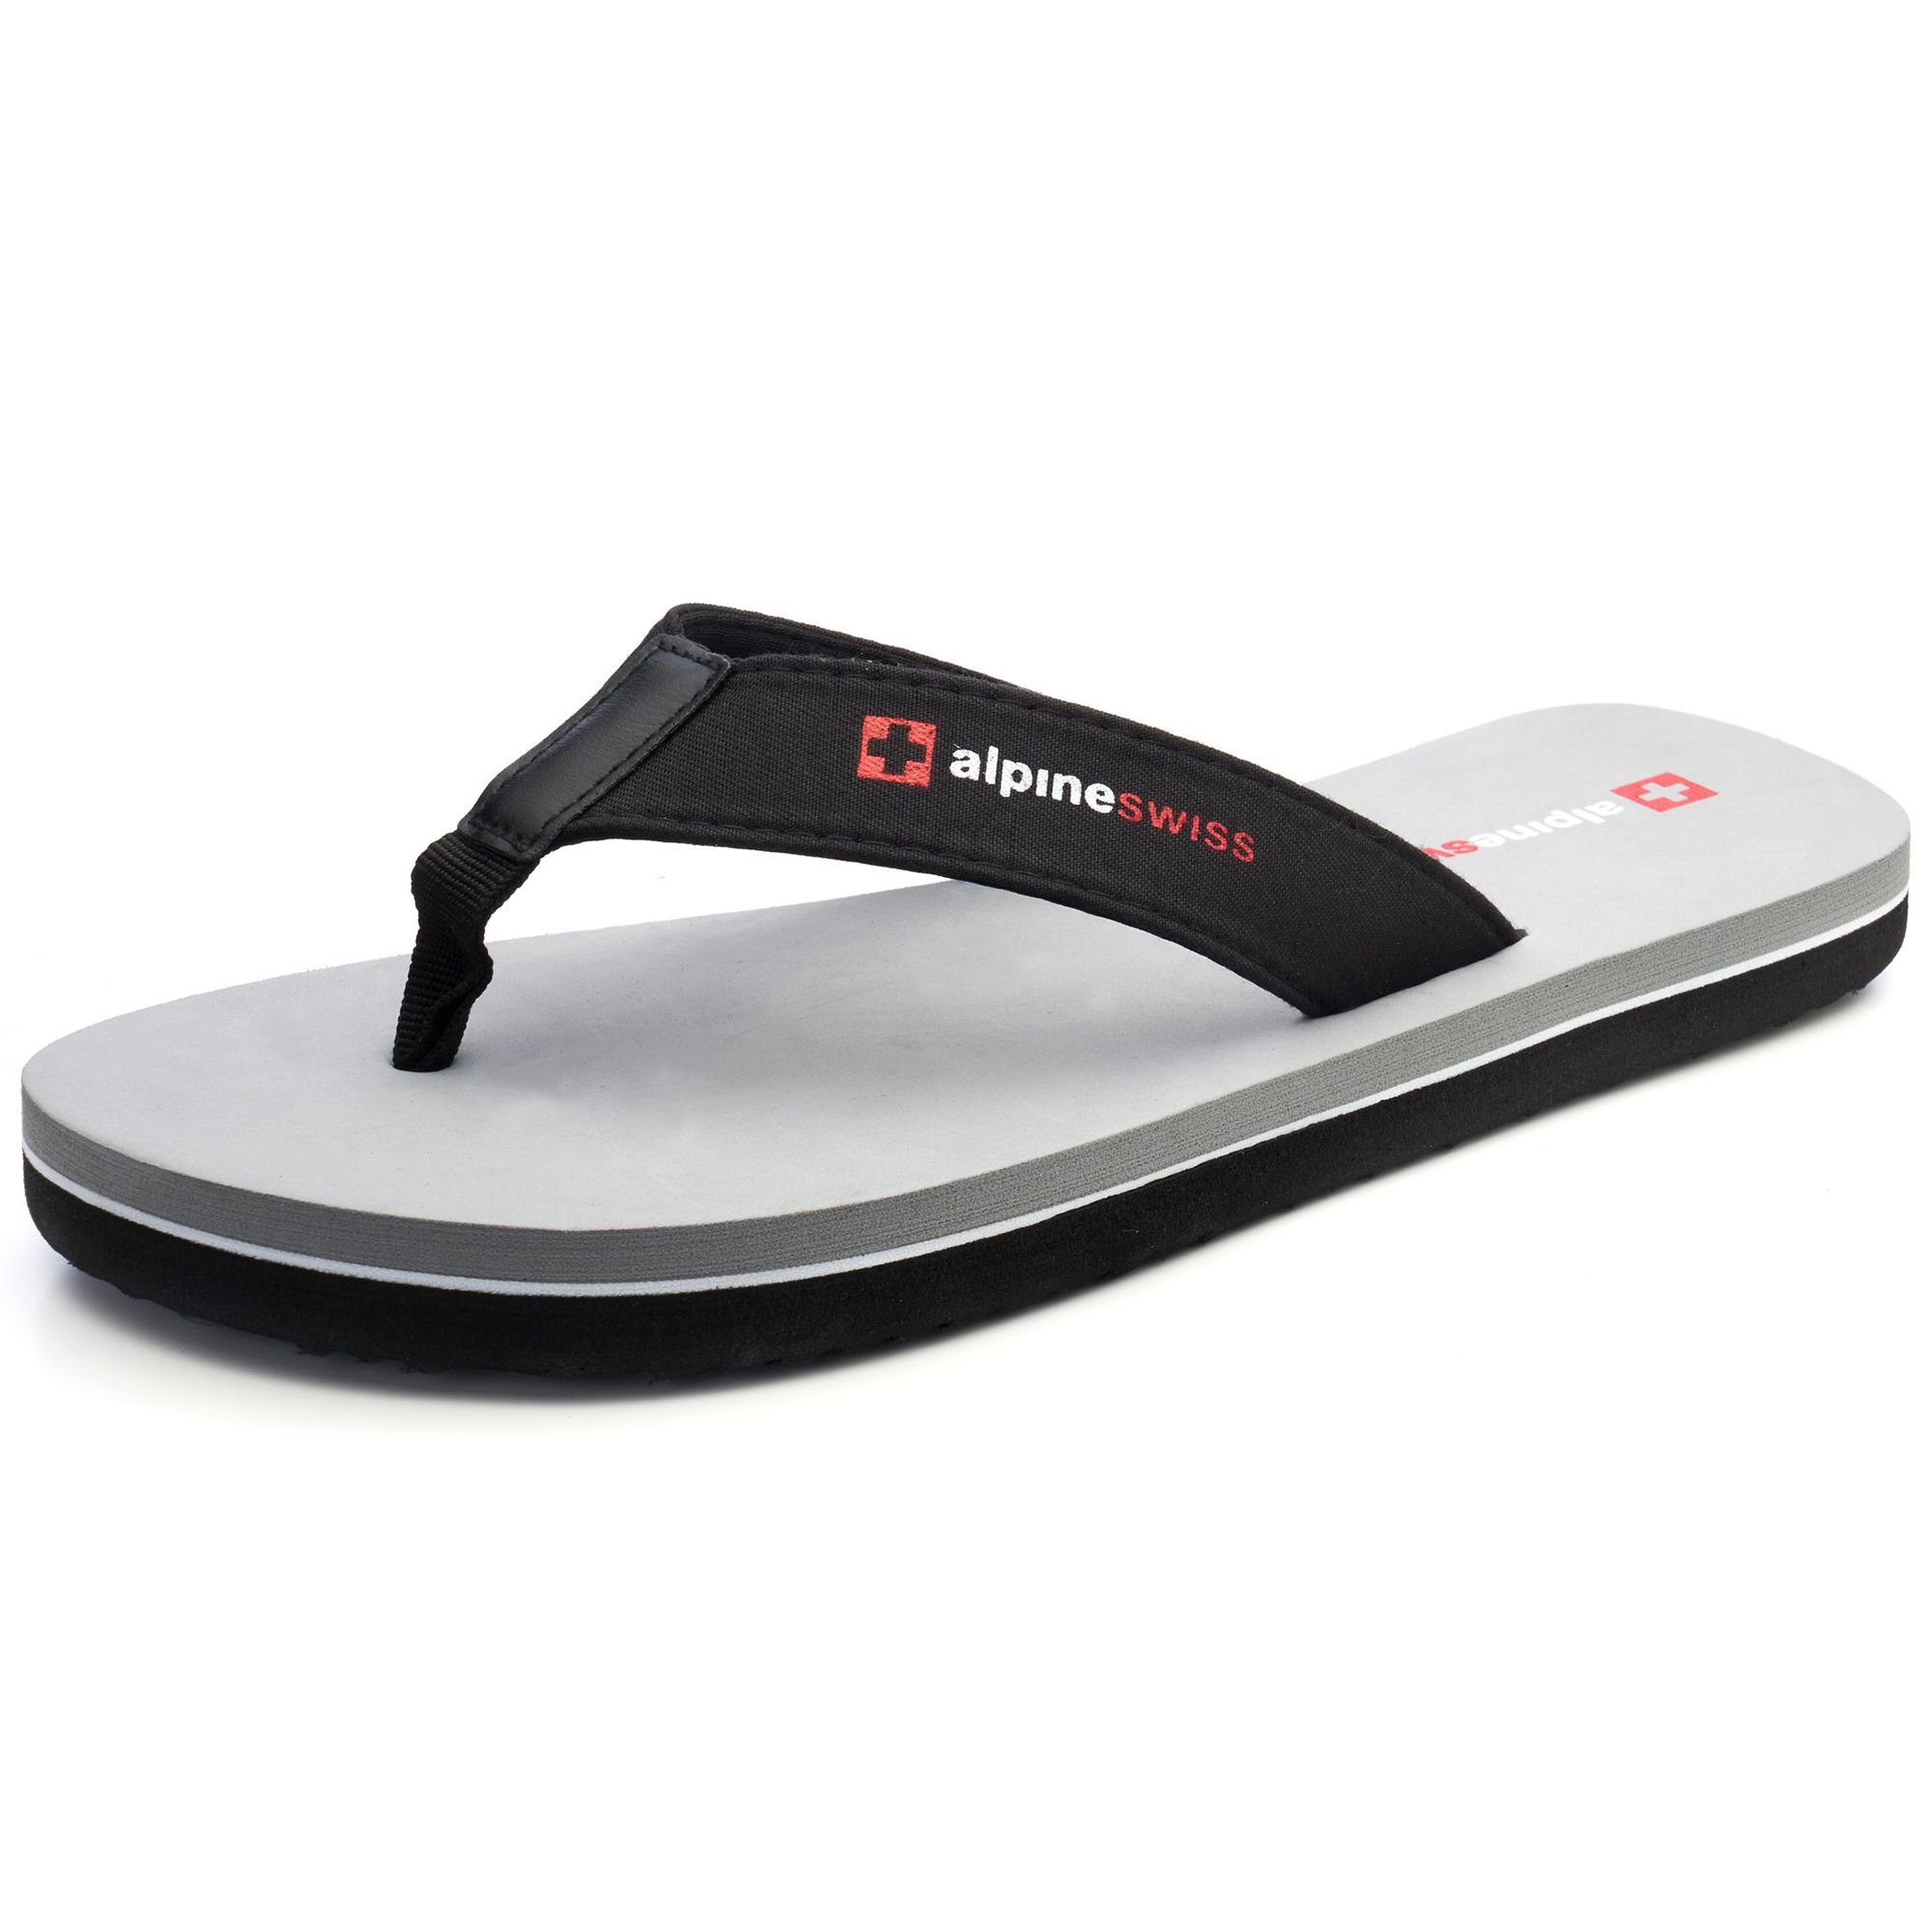 Alpine Swiss Mens Flip Flops Beach Sandals Lightweight EVA Sole Comfort Thongs -$9.99(46% Off)